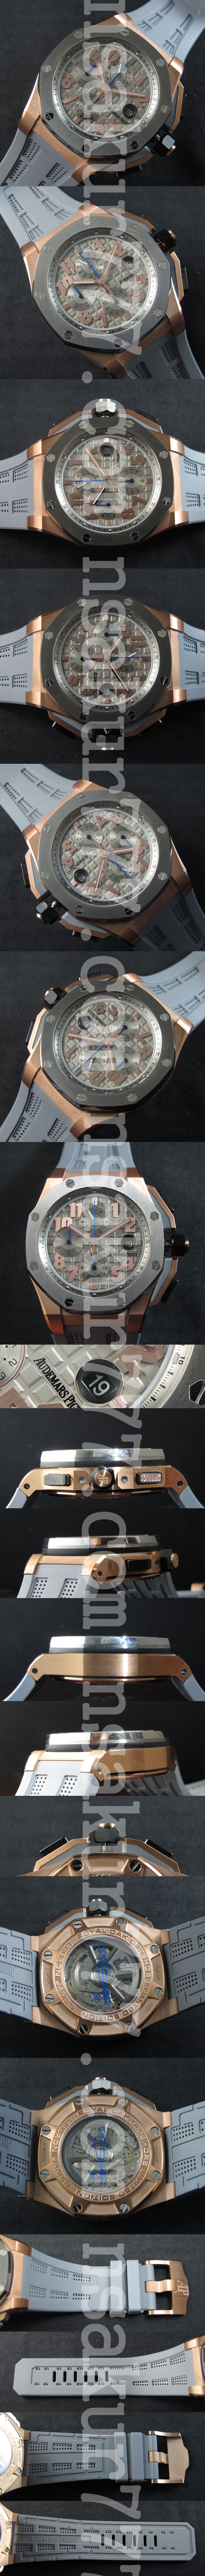 多機能腕時計 Audemars Piguet ロイヤルオーク オフショア クロノグラフ 「レブロン・ジェームズ」AUTOMATIC デイト